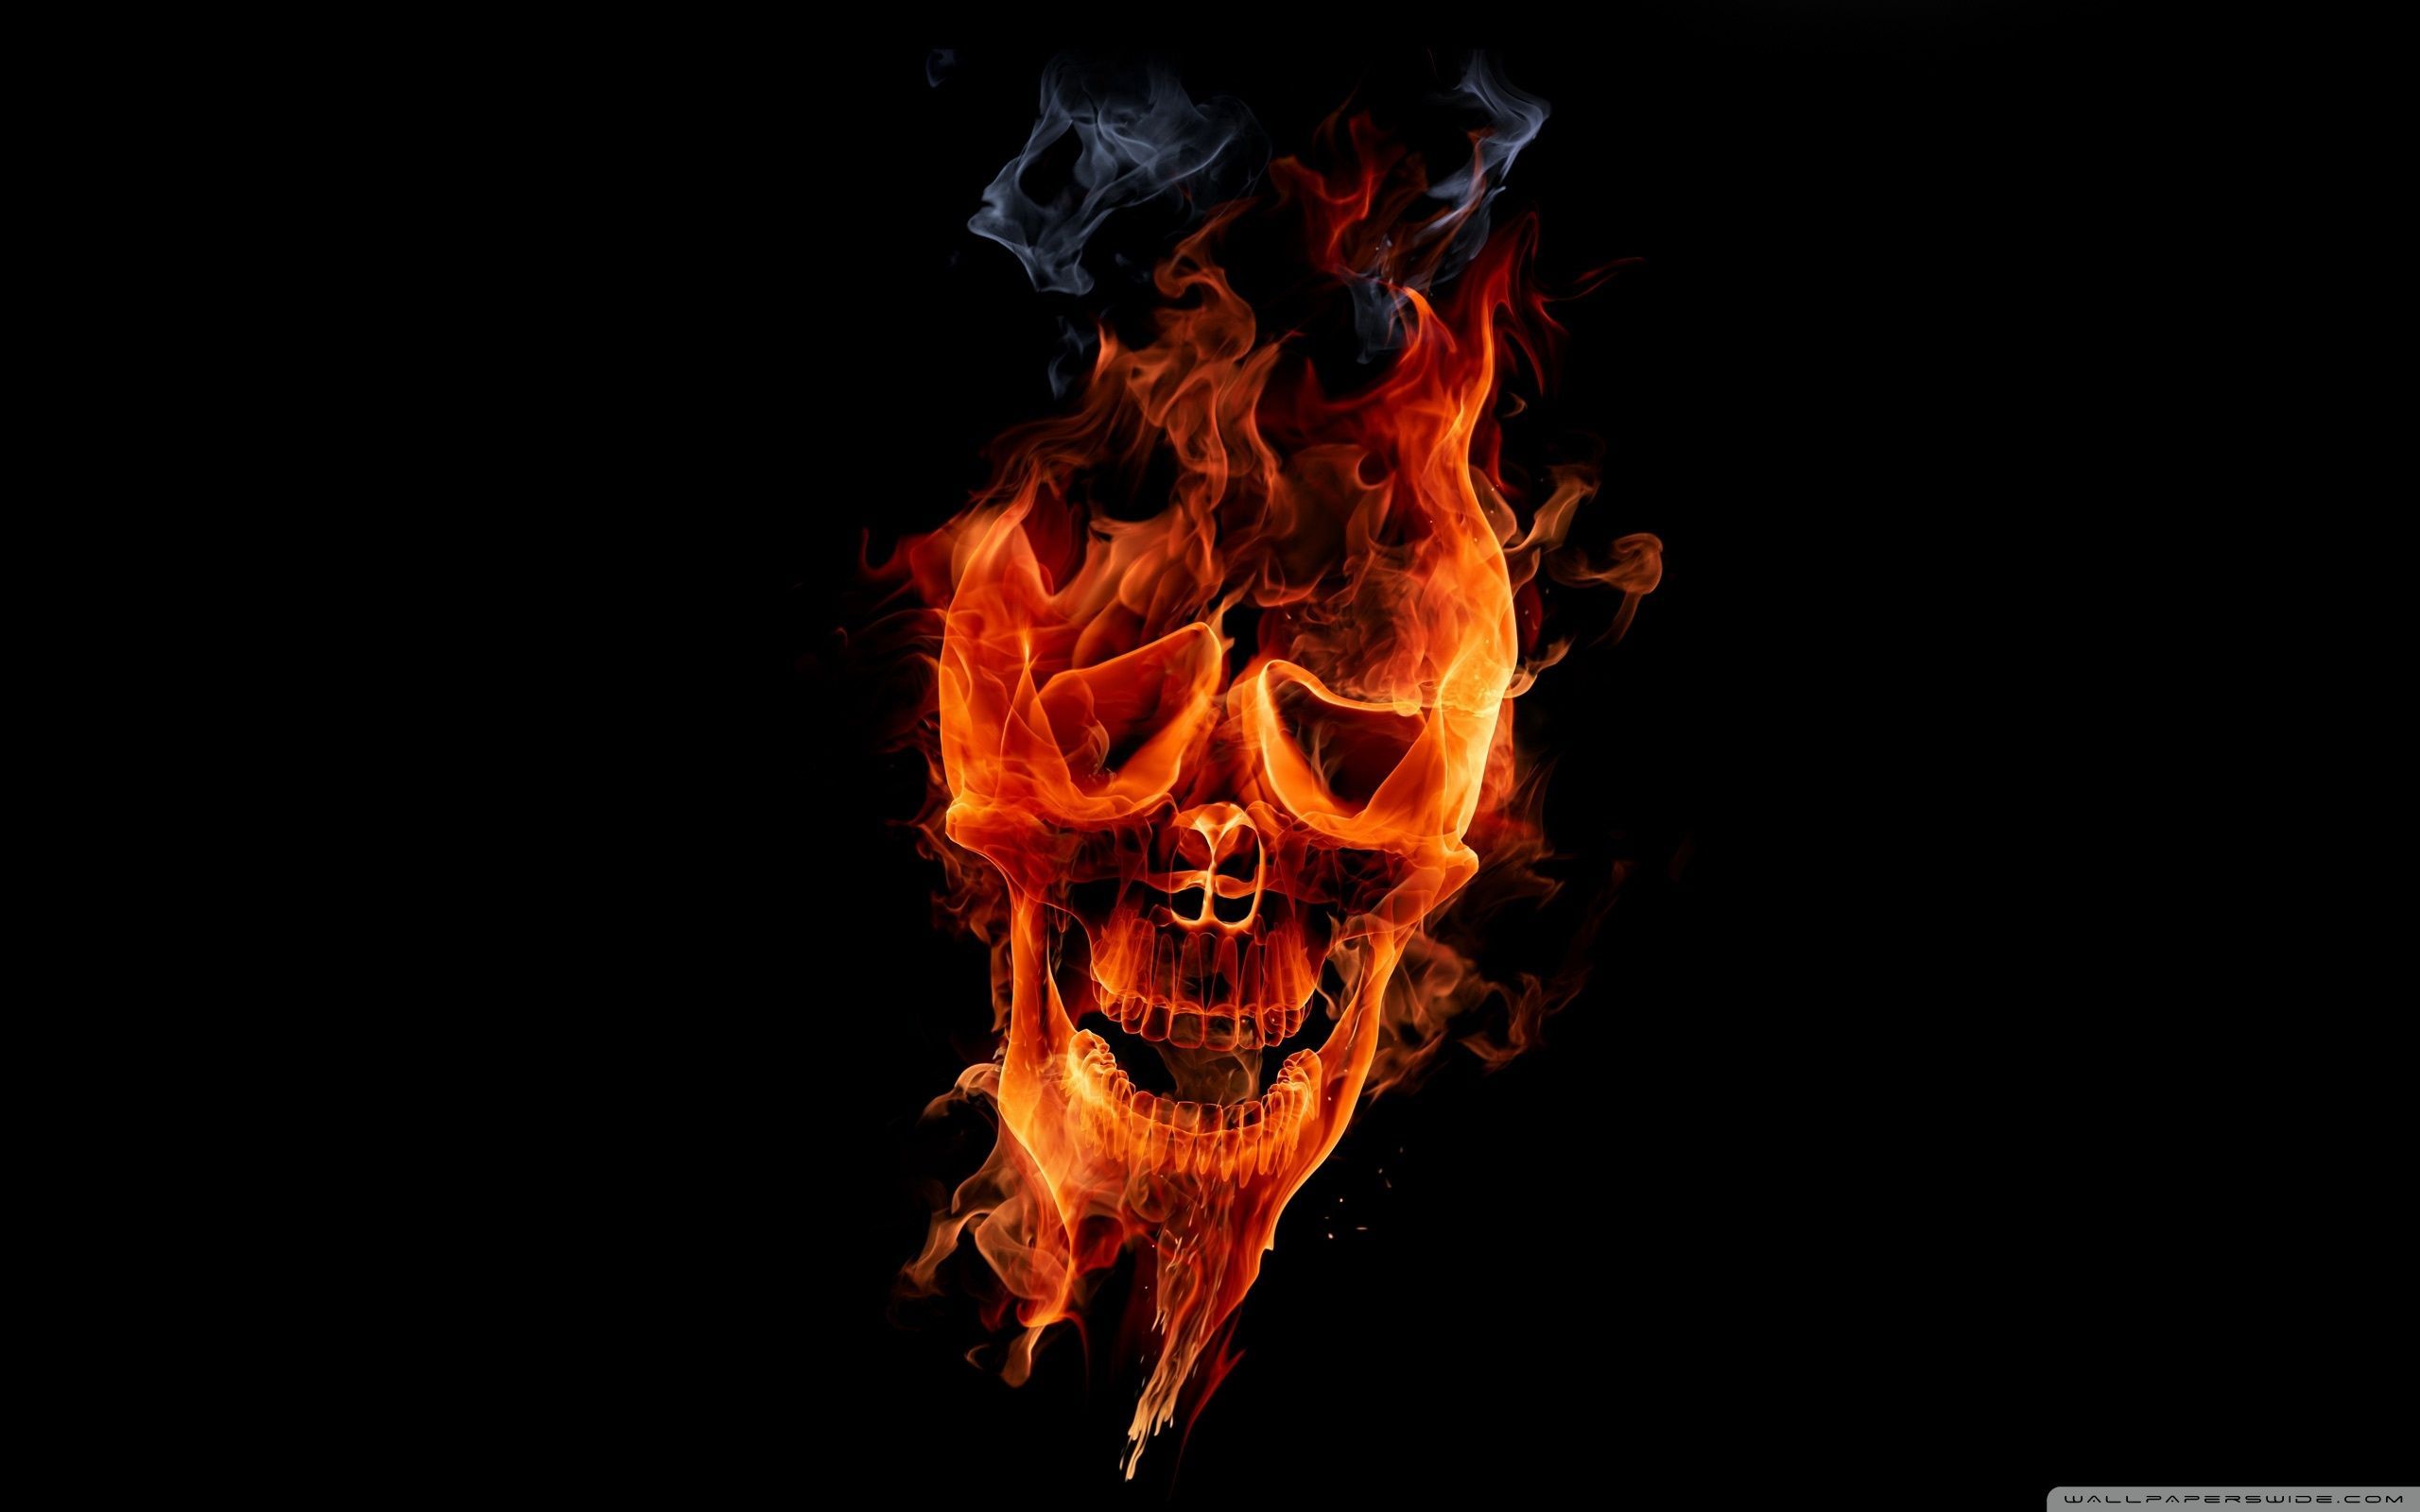 Fire Skull Wallpaper Full HD [2560x1600] - Free wallpaper full hd ...